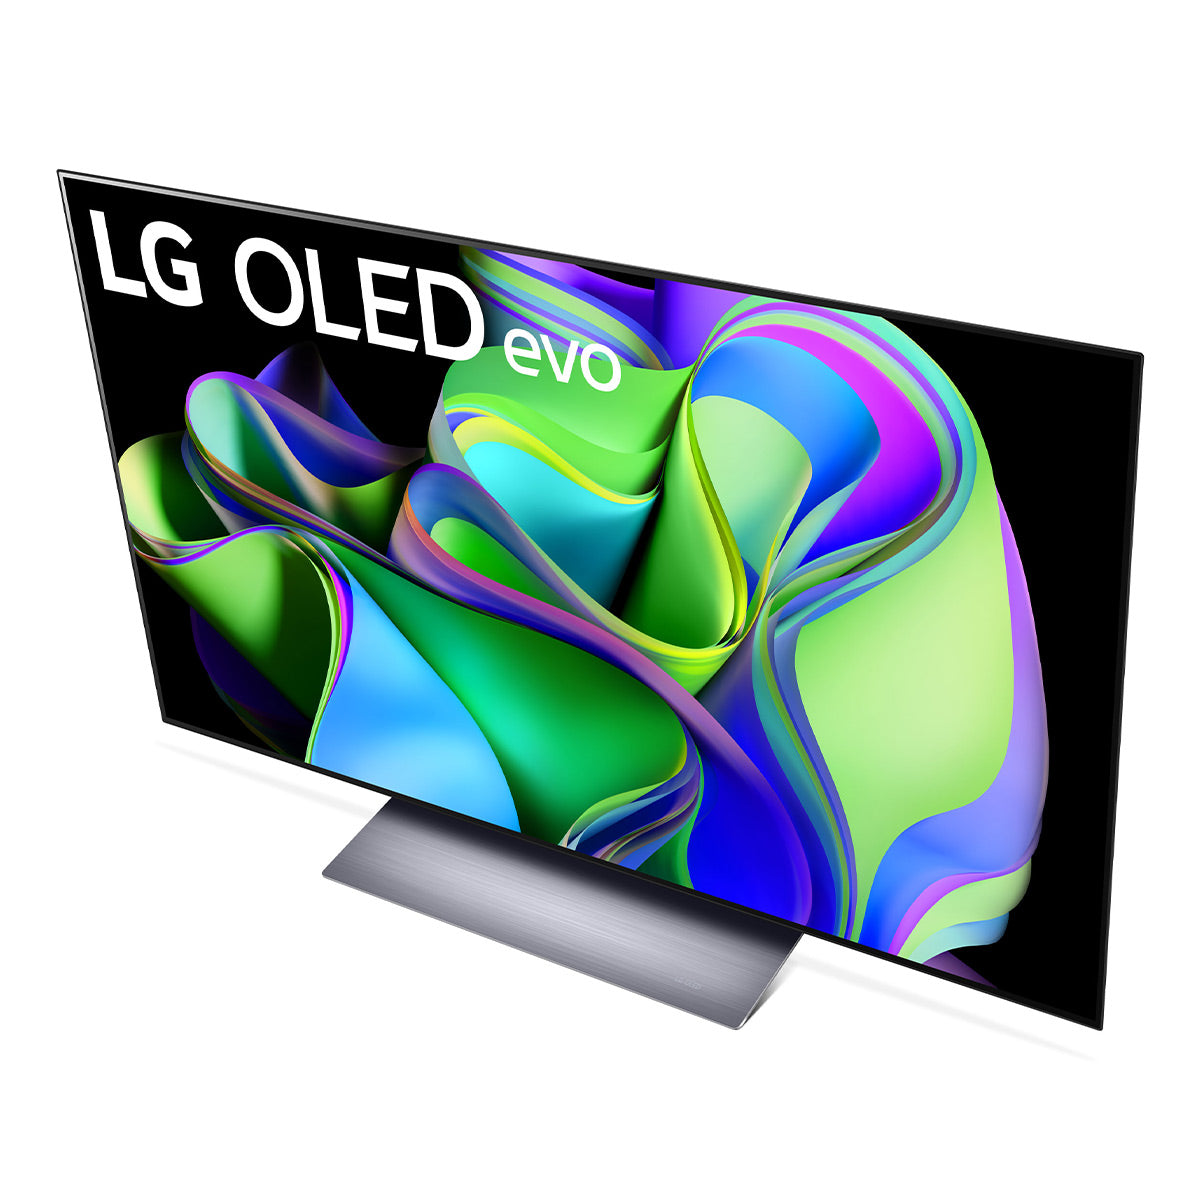 OLED TVs: Ultra Slim & LG 4K OLED TVs